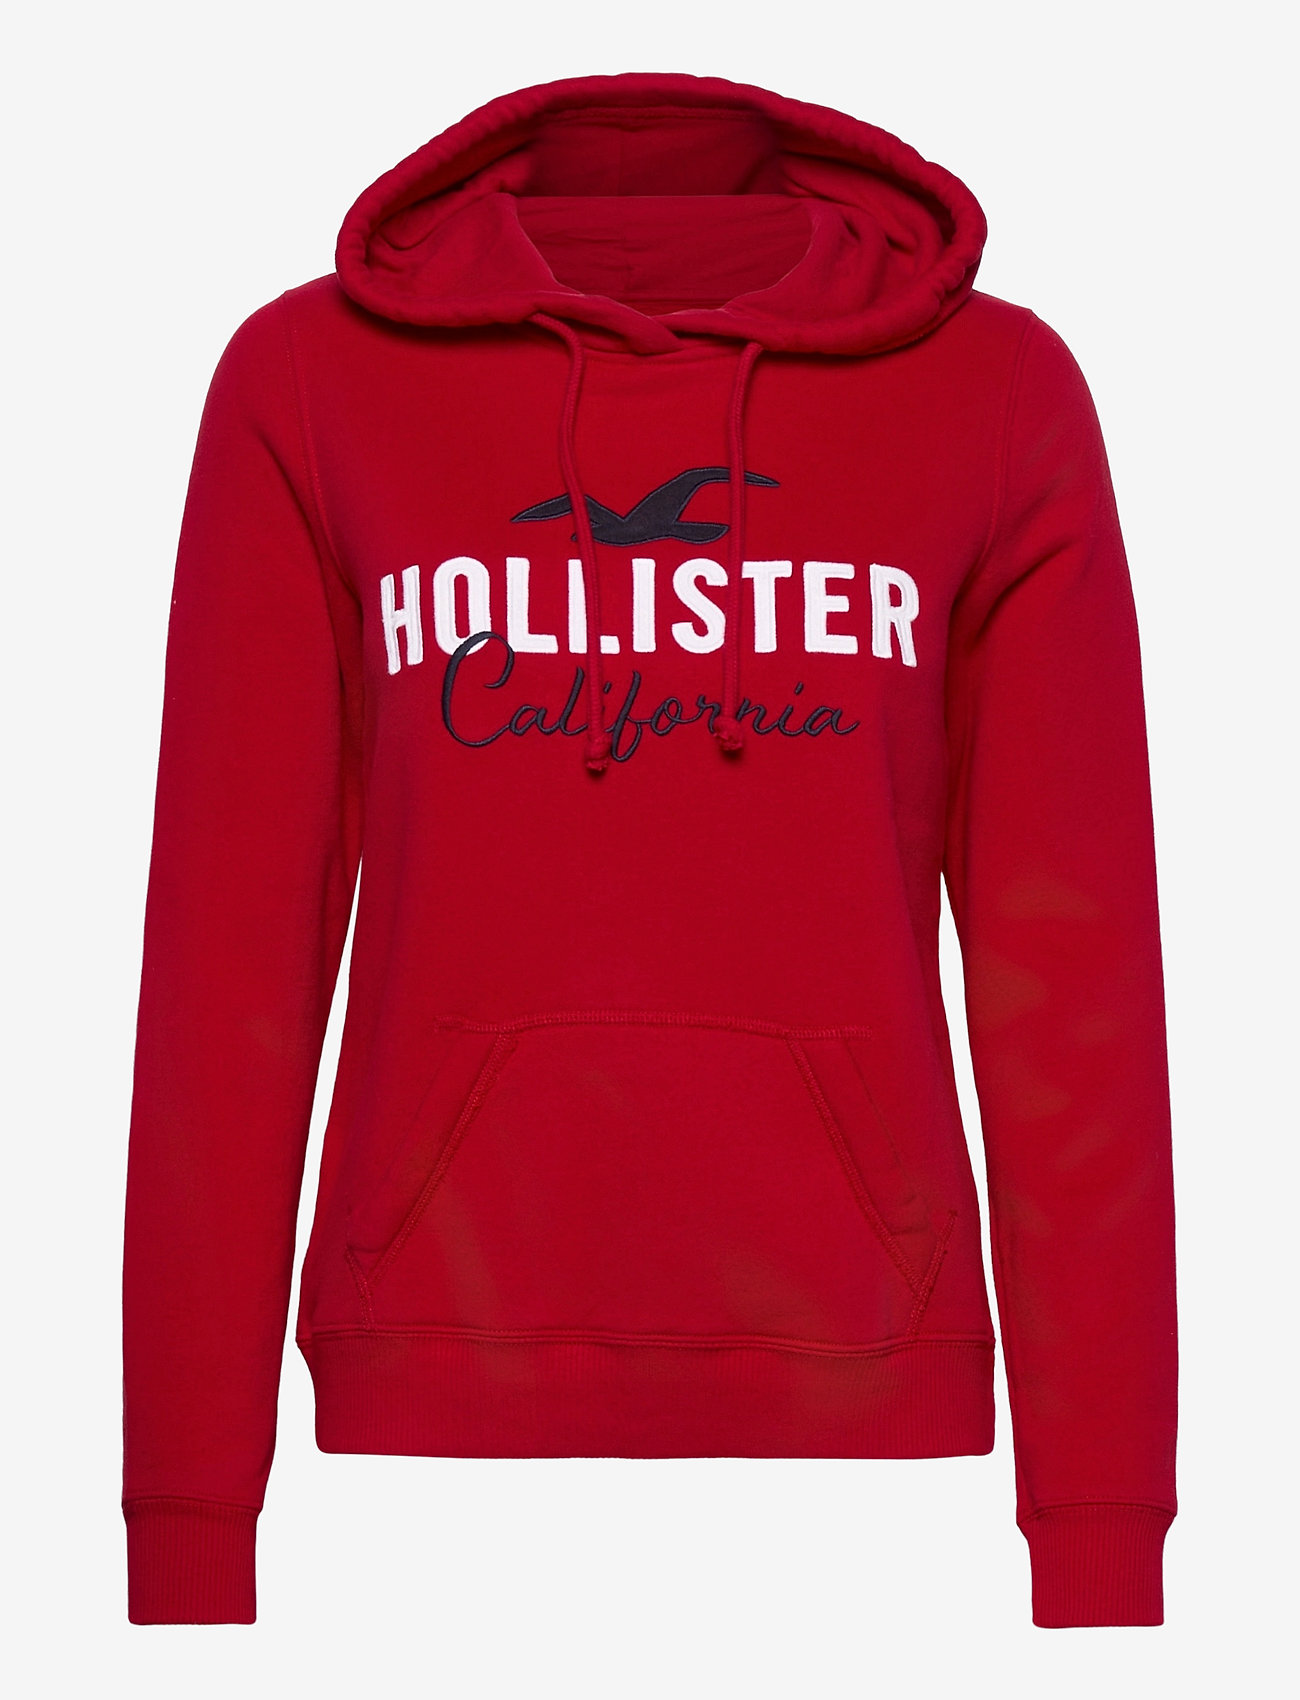 red hollister hoodie